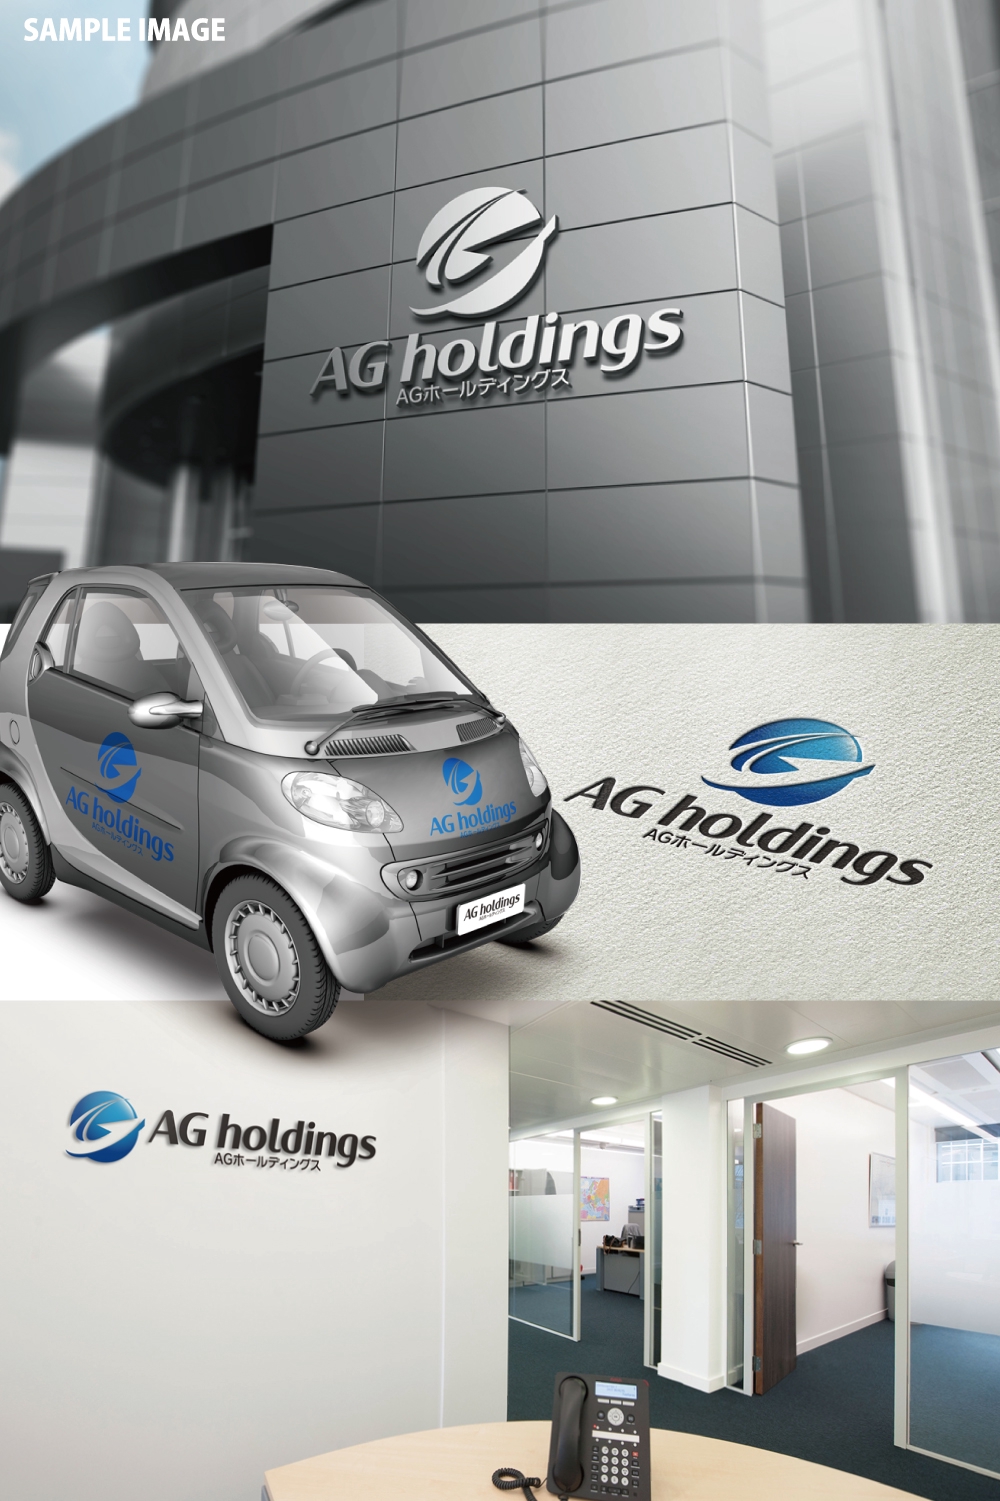 ホールディングス会社「AGホールディングス」のロゴ